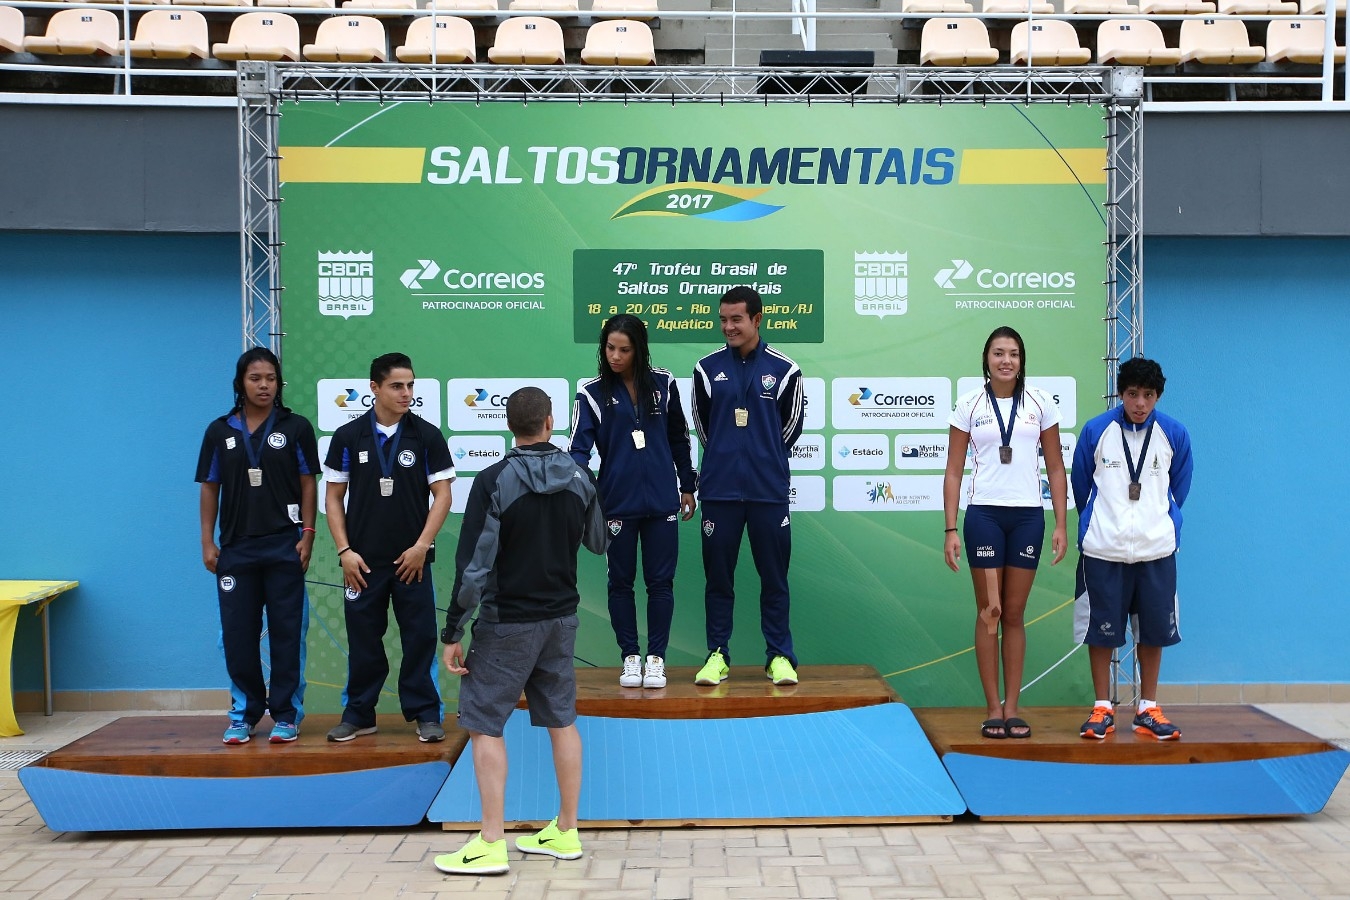 Equipe. Trofeu Brasil de Saltos Ornamentais. 18 de maio de 2017, Rio de Janeiro, RJ. Foto: Satiro Sodré/SSPress/CBDA